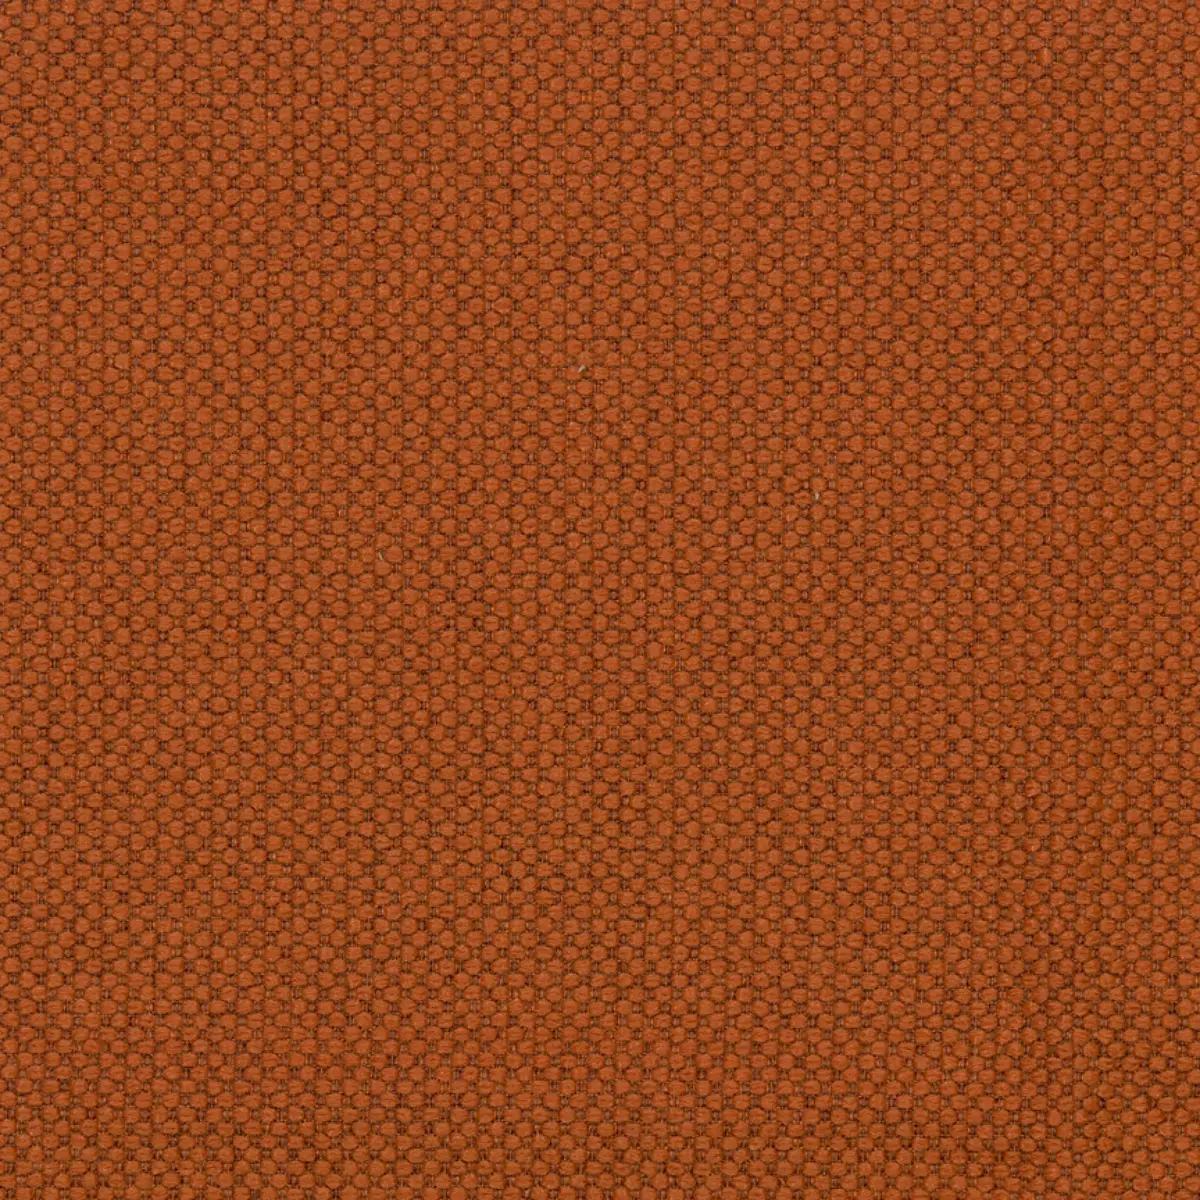 Fabric sample Merit 0032 orange